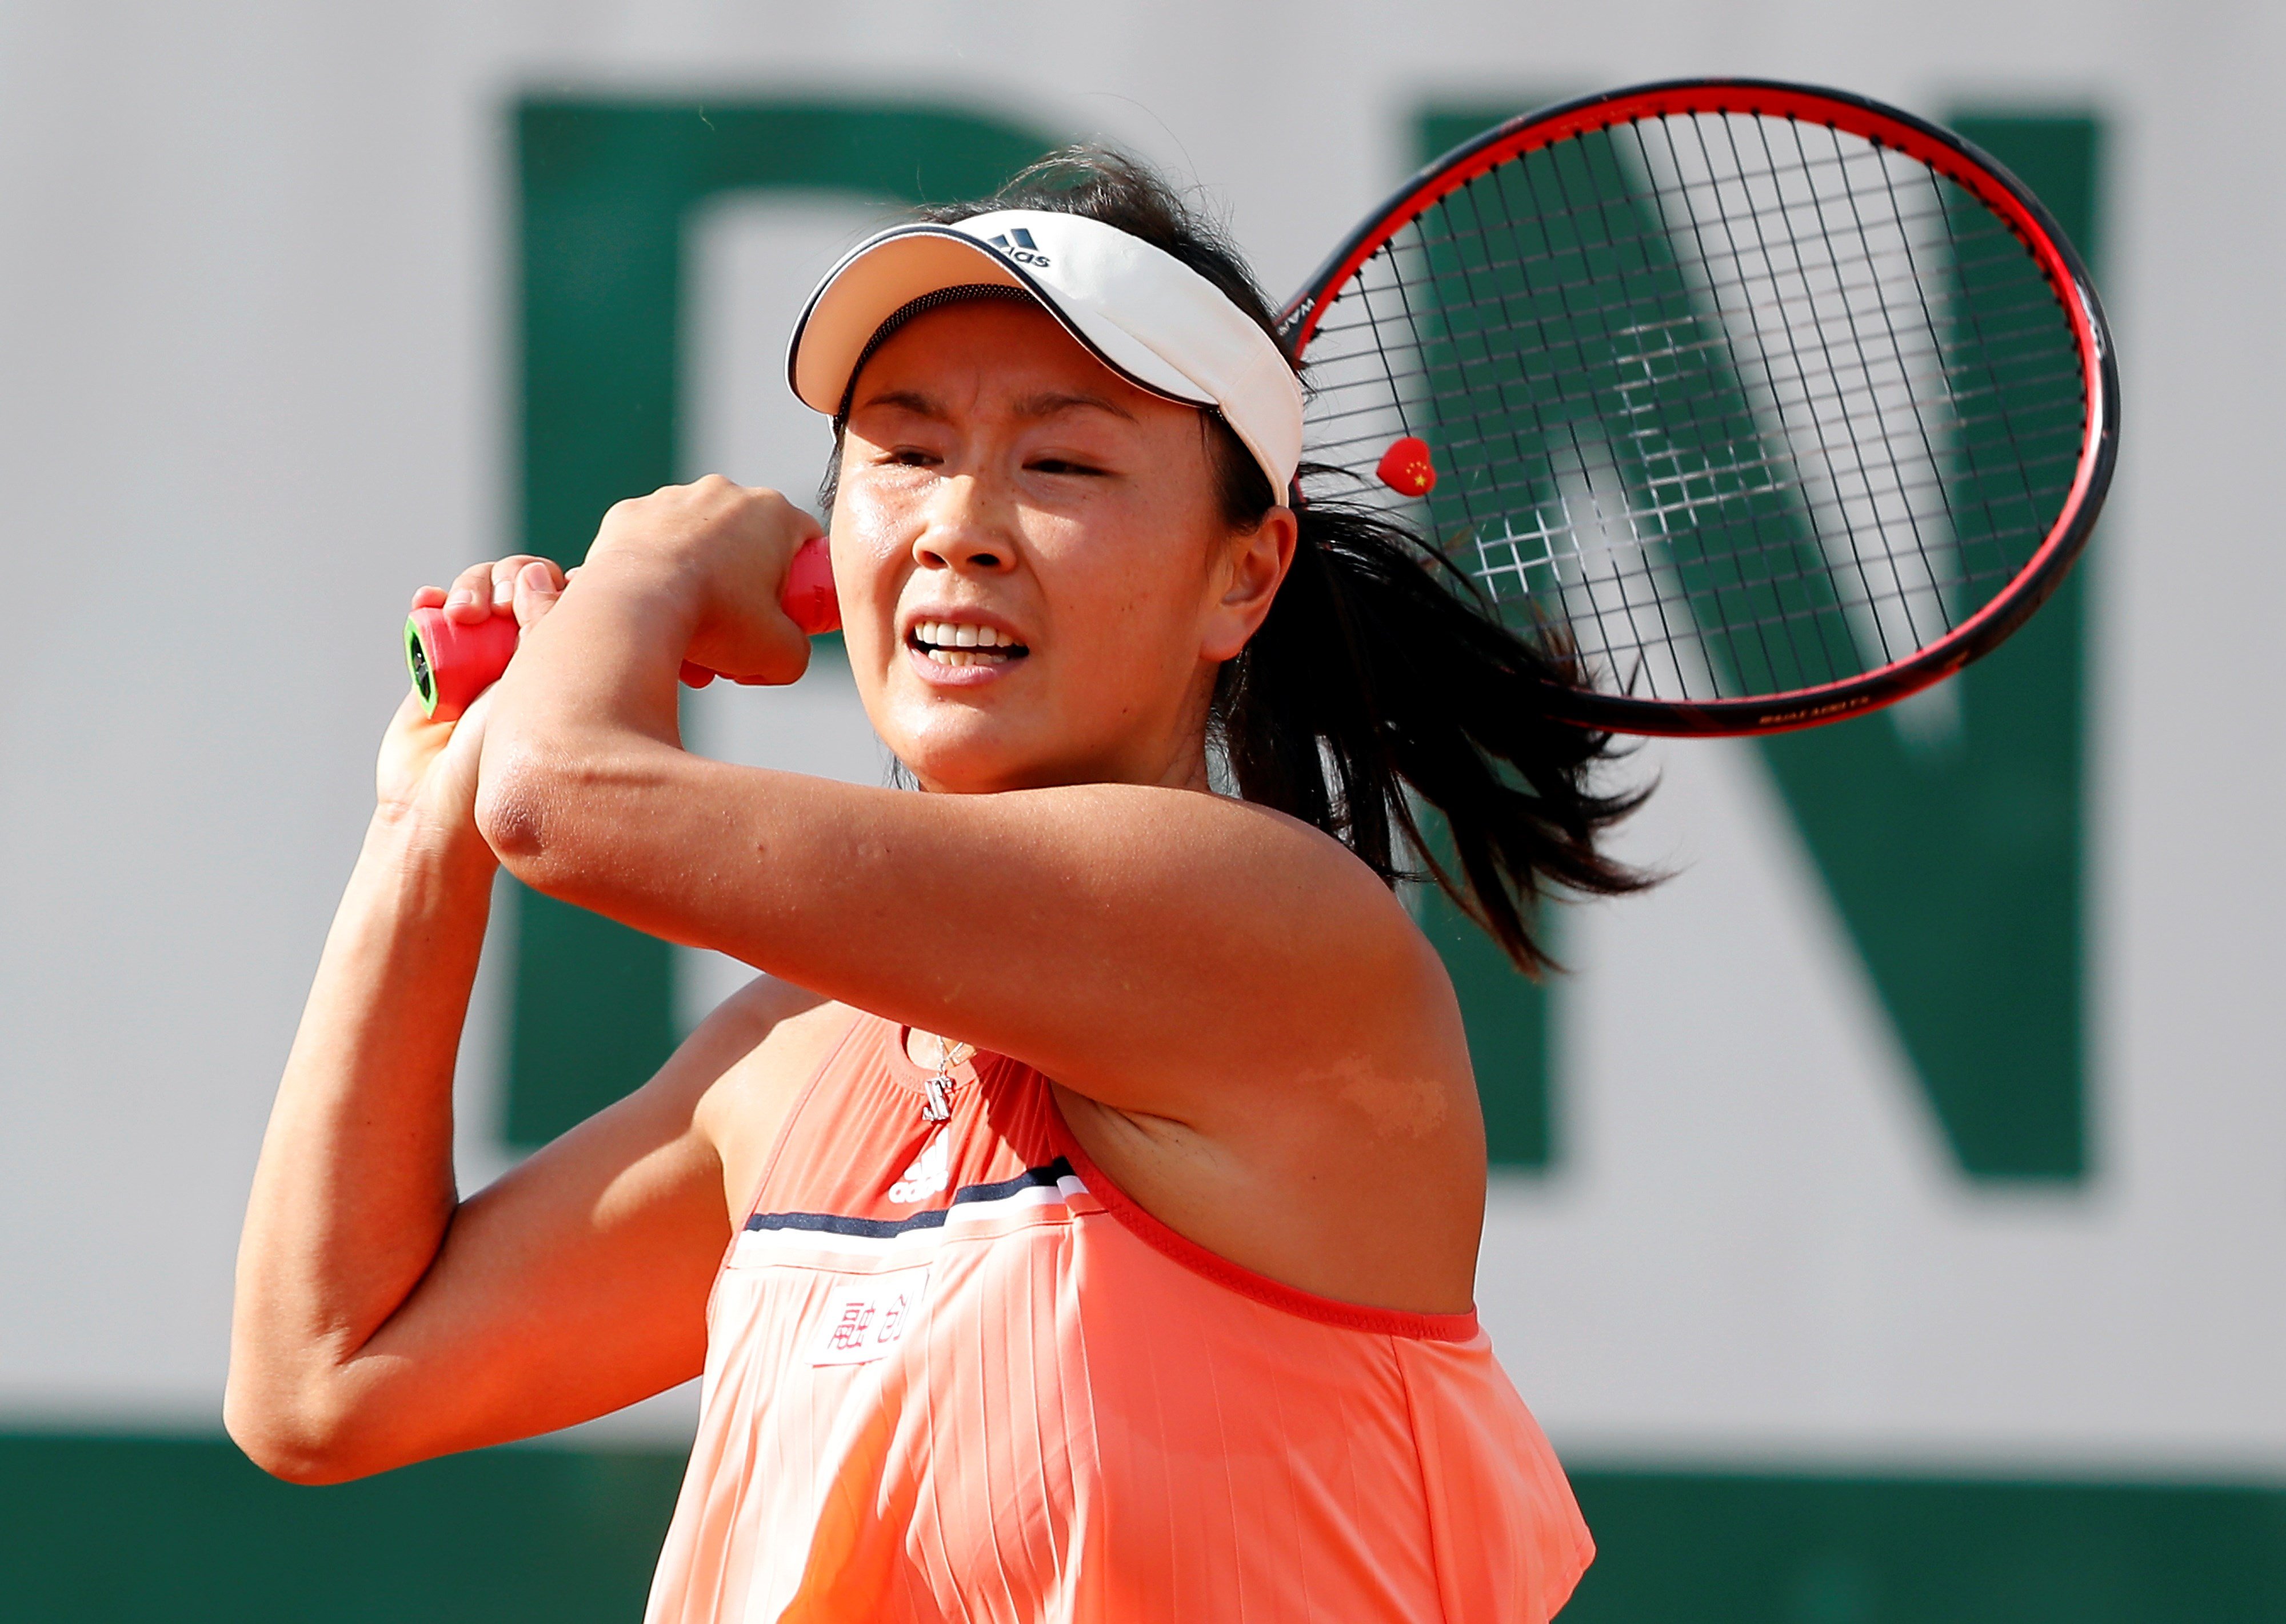 La misteriosa desaparició de la tenista que va denunciar abusos d'un alt càrrec xinès